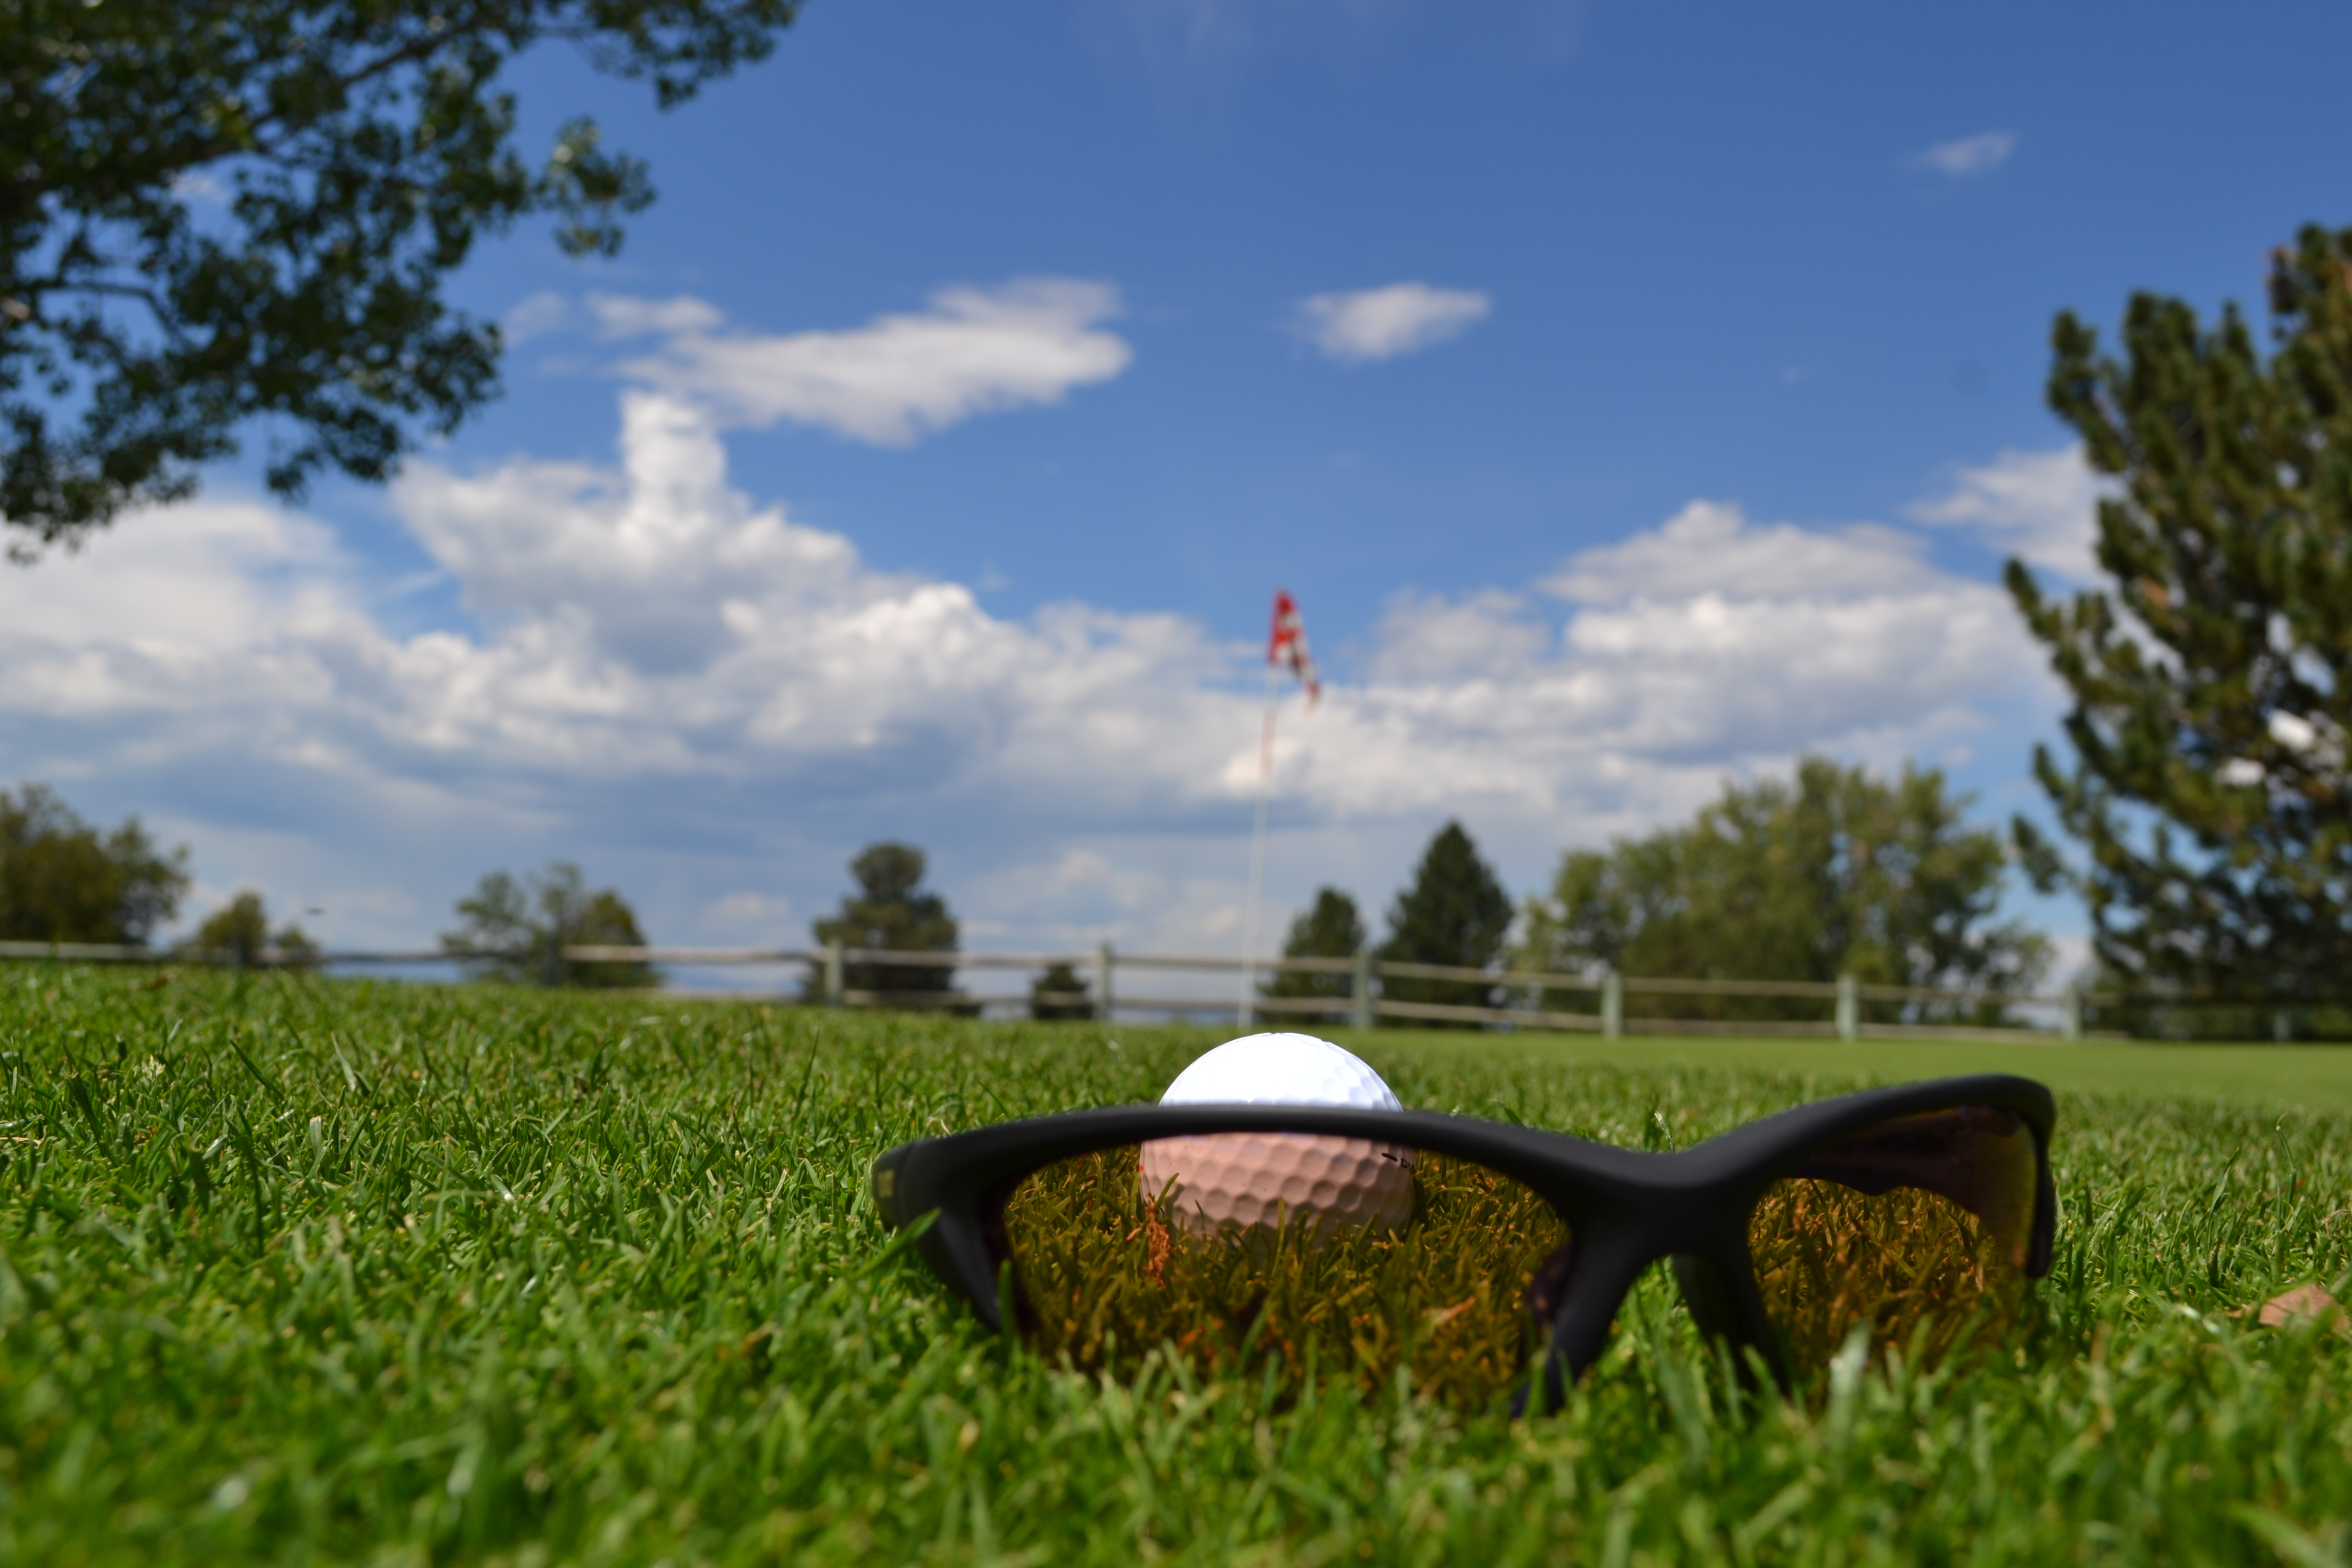 Polarized sunglass lens for golf.